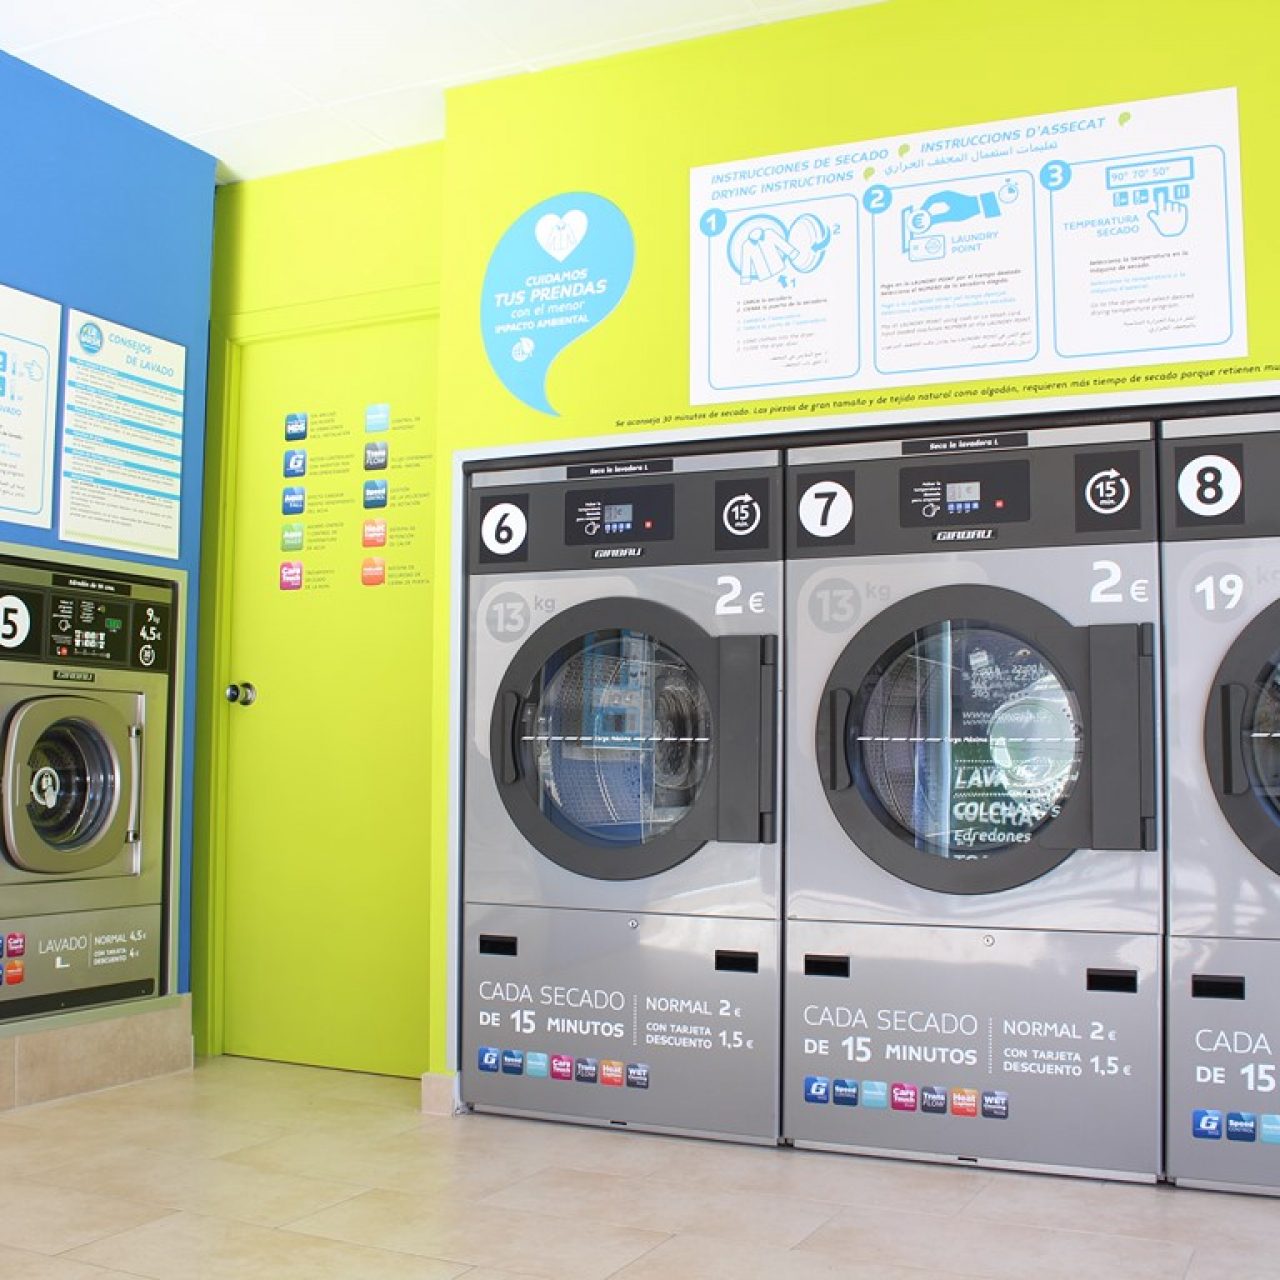 Visita la lavandería autoservicio para empezar bien el año